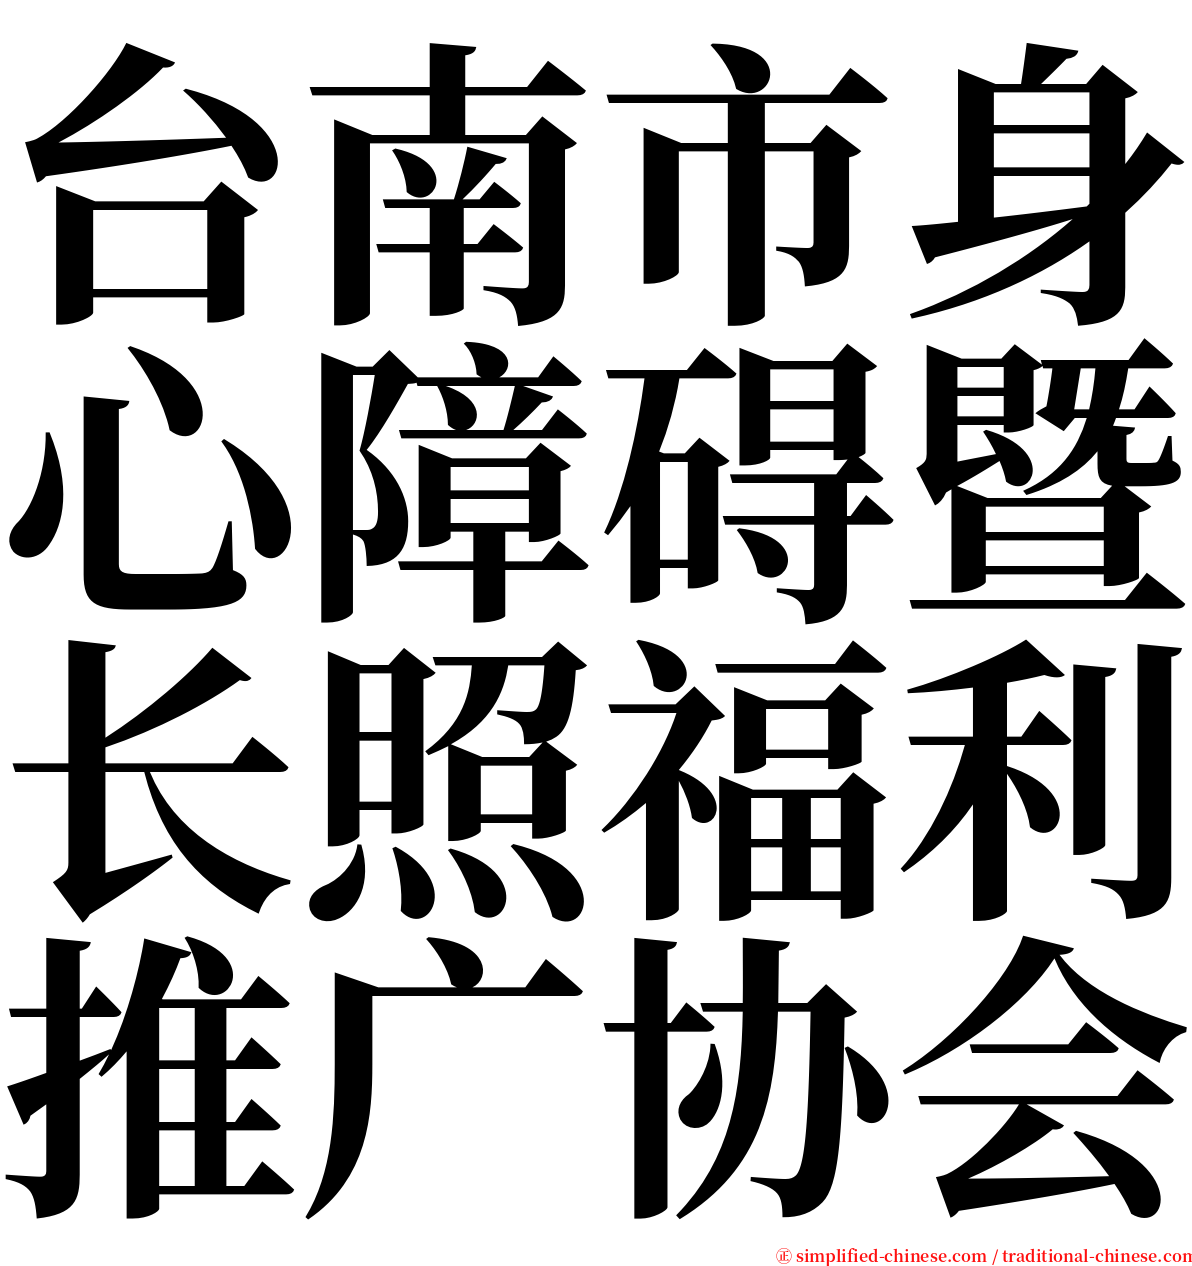 台南市身心障碍暨长照福利推广协会 serif font